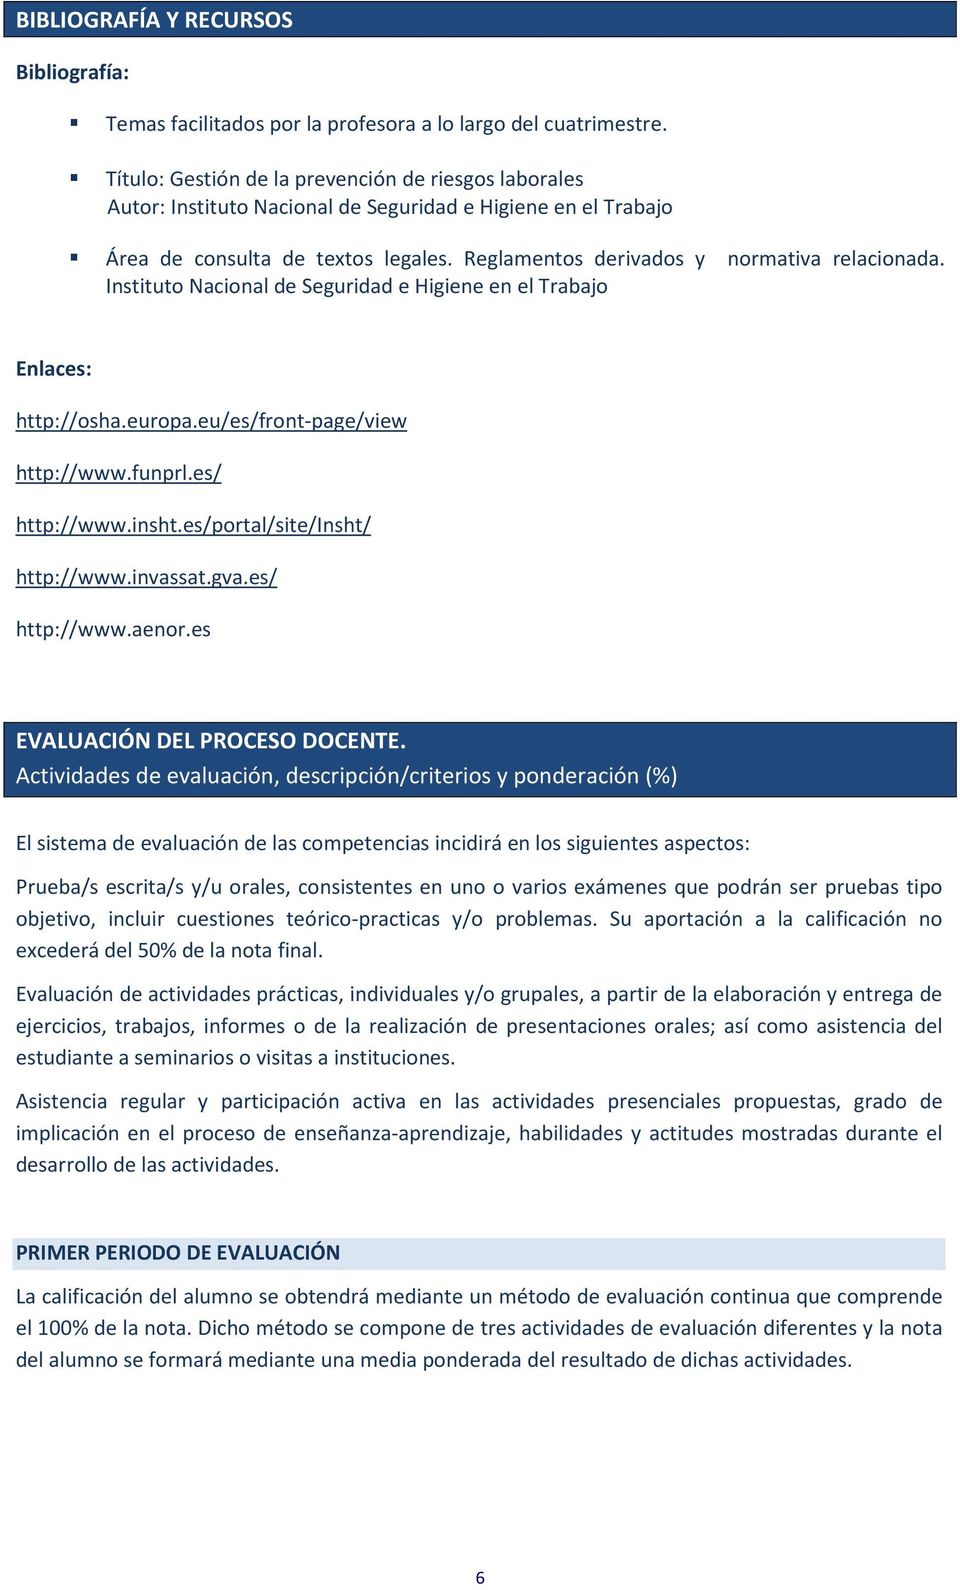 Instituto Nacional de Seguridad e Higiene en el Trabajo Enlaces: http://osha.europa.eu/es/front-page/view http://www.funprl.es/ http://www.insht.es/portal/site/insht/ http://www.invassat.gva.